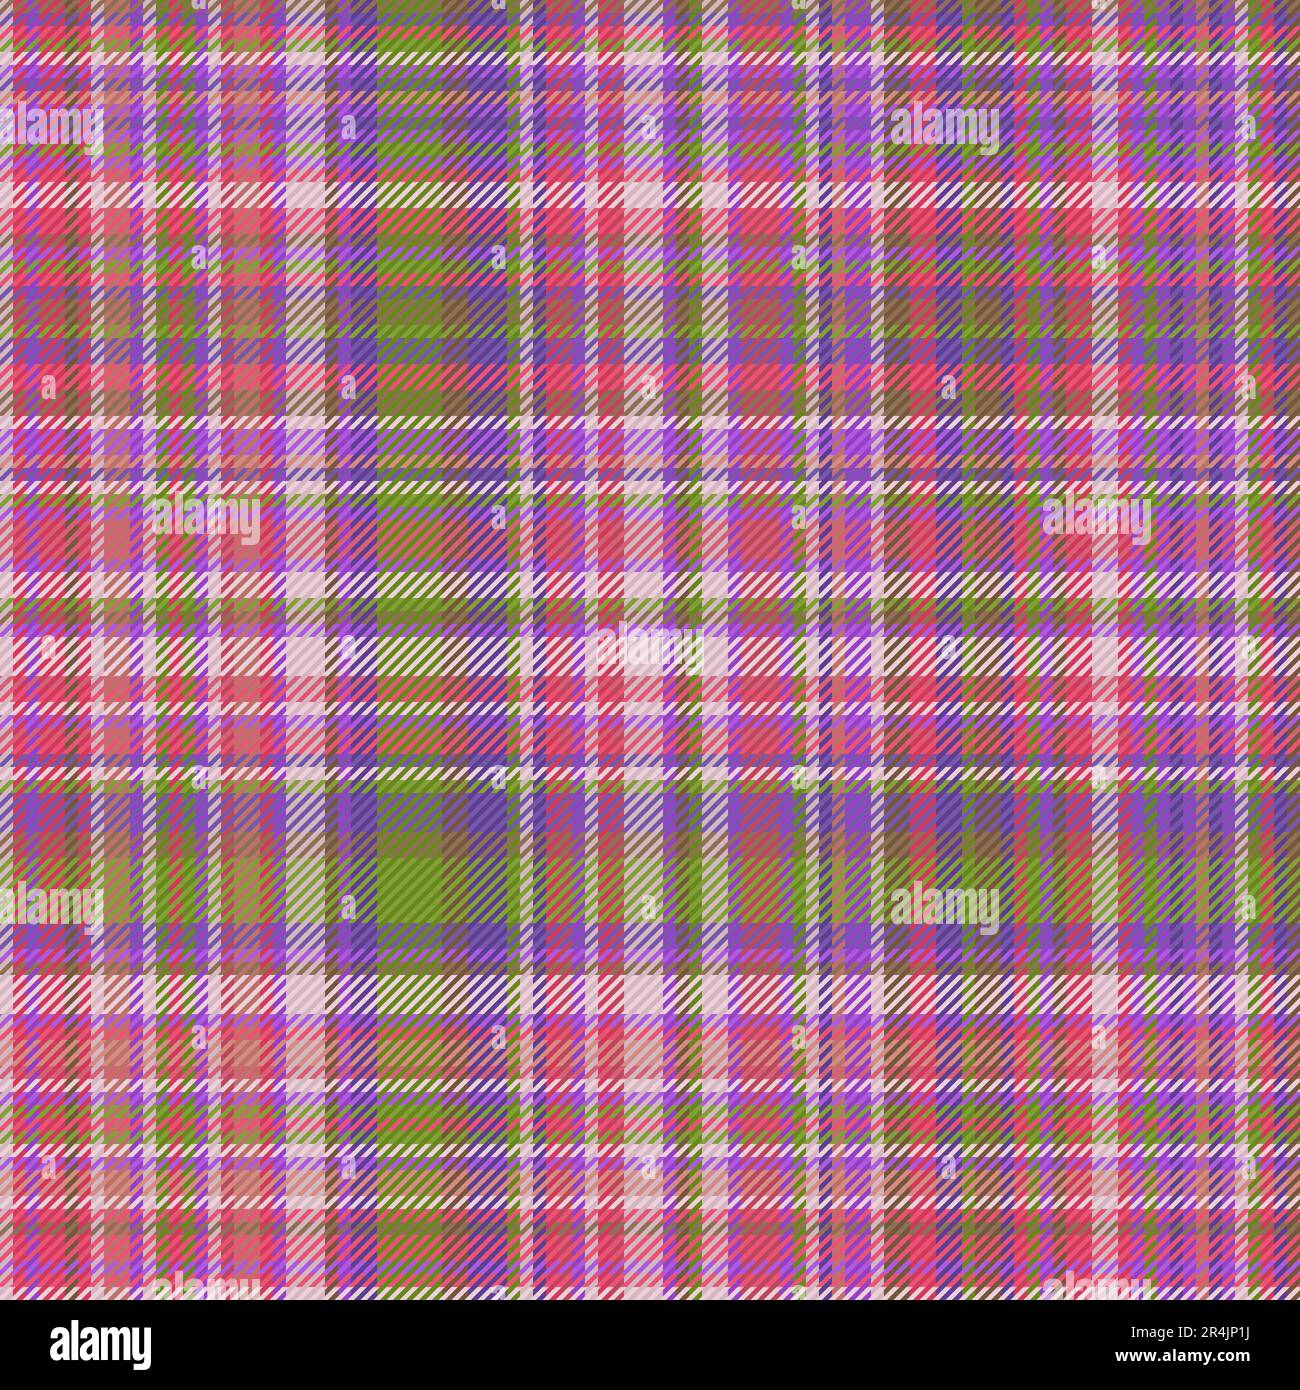 Verificación de tela sin fisuras del vector de fondo de textura con un patrón textil de cuadros tartán en colores púrpura y rojo. Ilustración del Vector